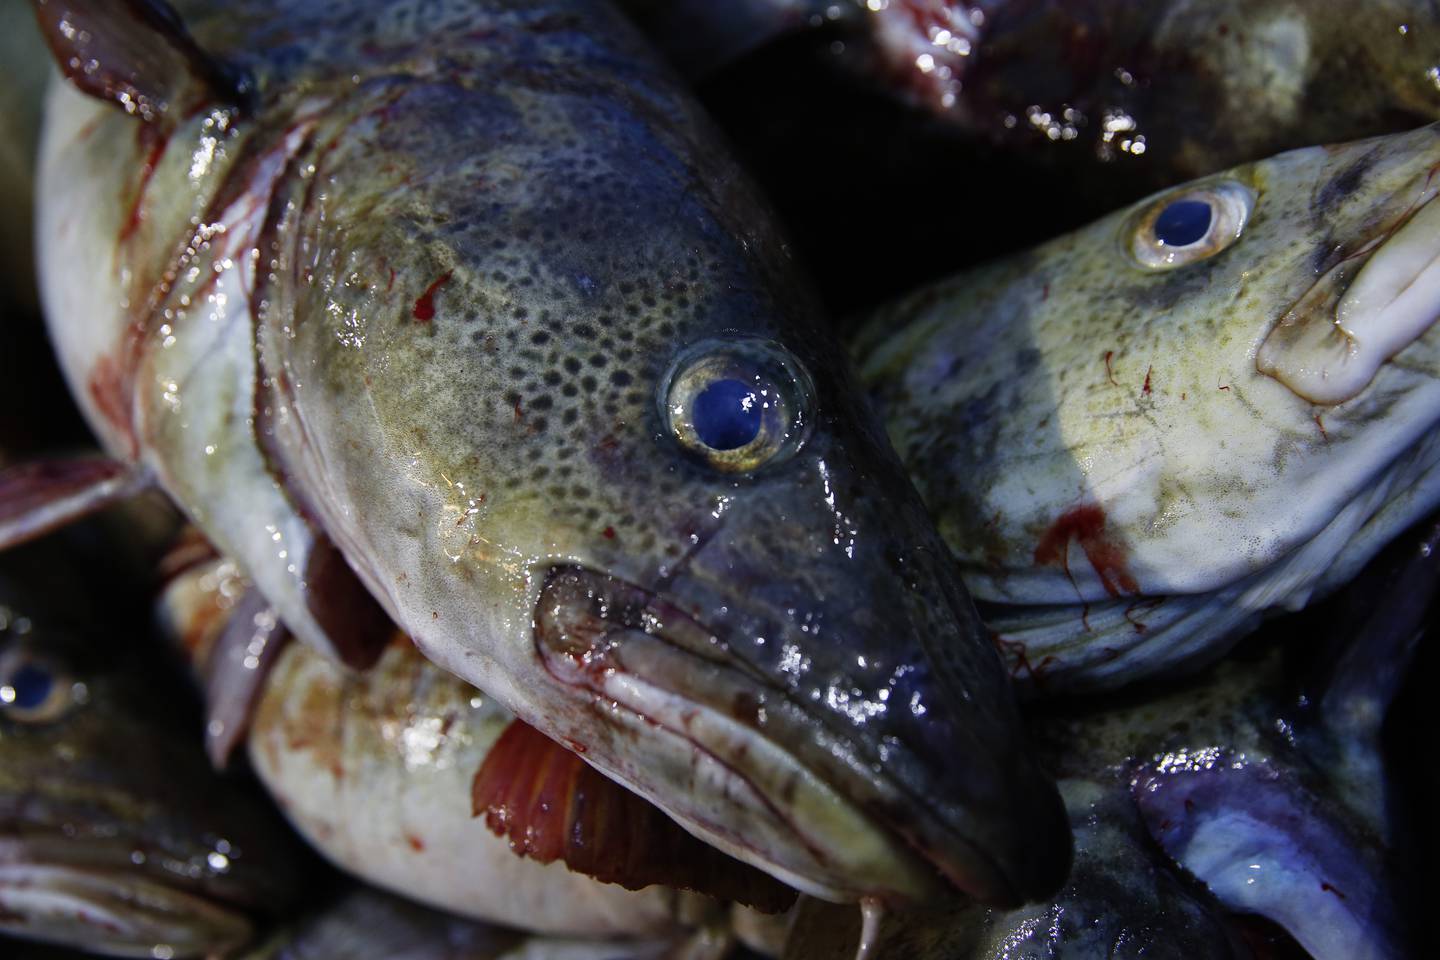 Det har vært forbud mot å fiske torsk i Oslofjorden siden 2019, men hvis noen likevel får en torsk på kroken, bør ikke gravide, ammende og små barn under fem år spise den, ifølge Mattilsynet.